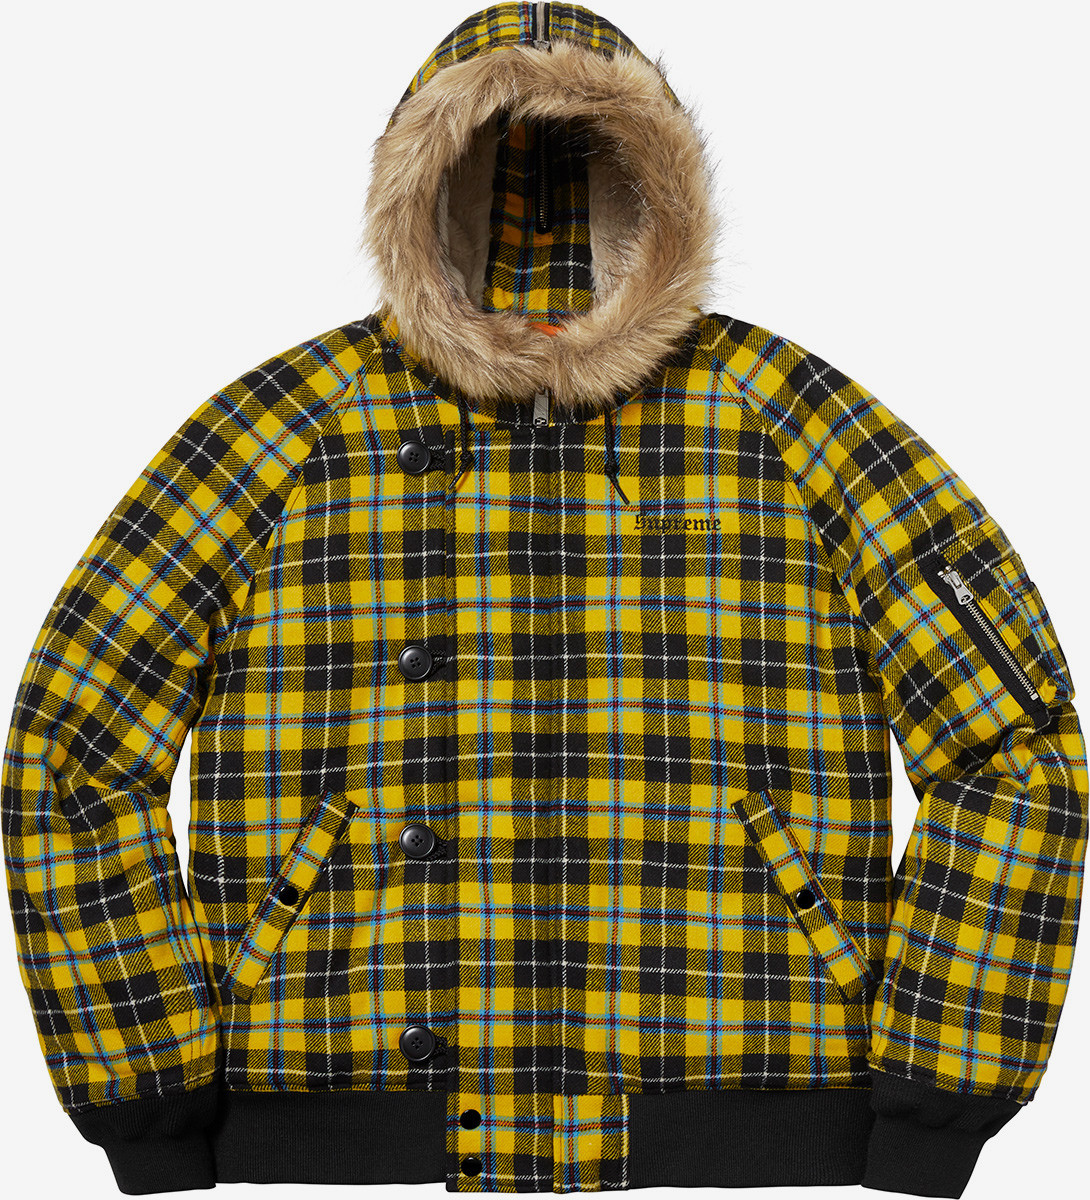 supreme-drop-list-wool-n-2b-jacket-1090x1200.jpg